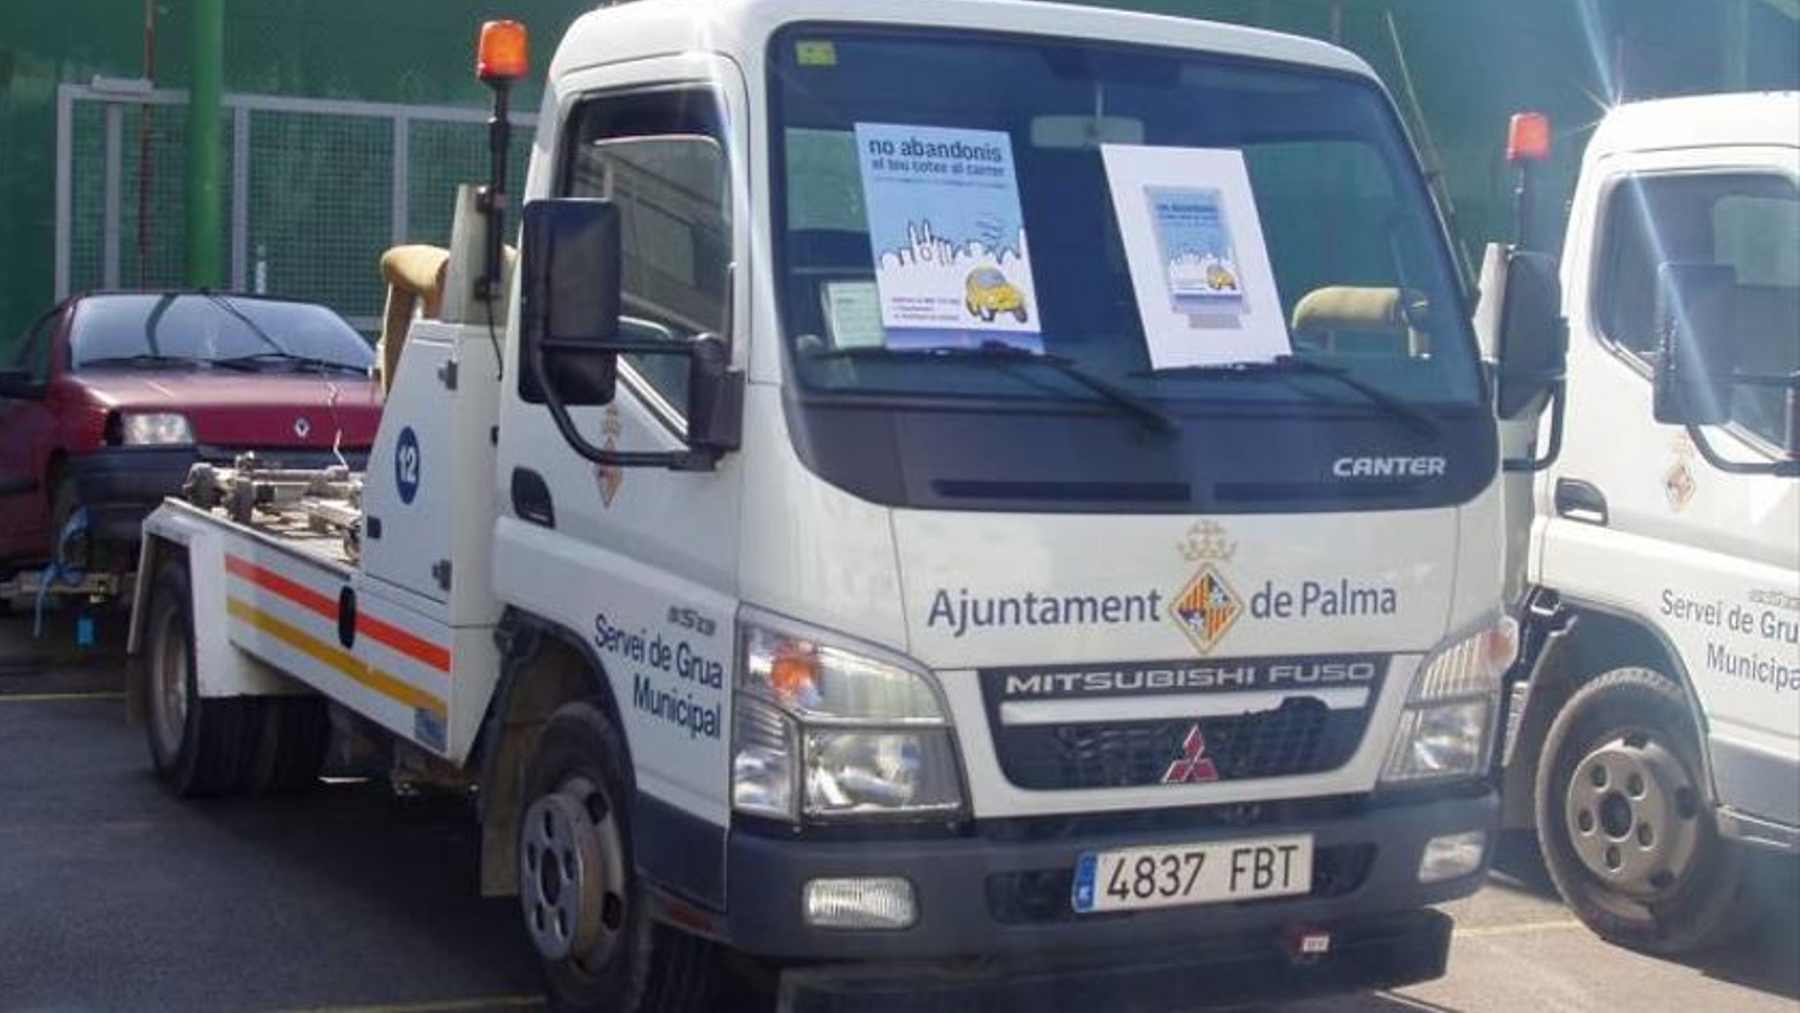 Vehículo del servicio de la grúa del Ayuntamiento de Palma.